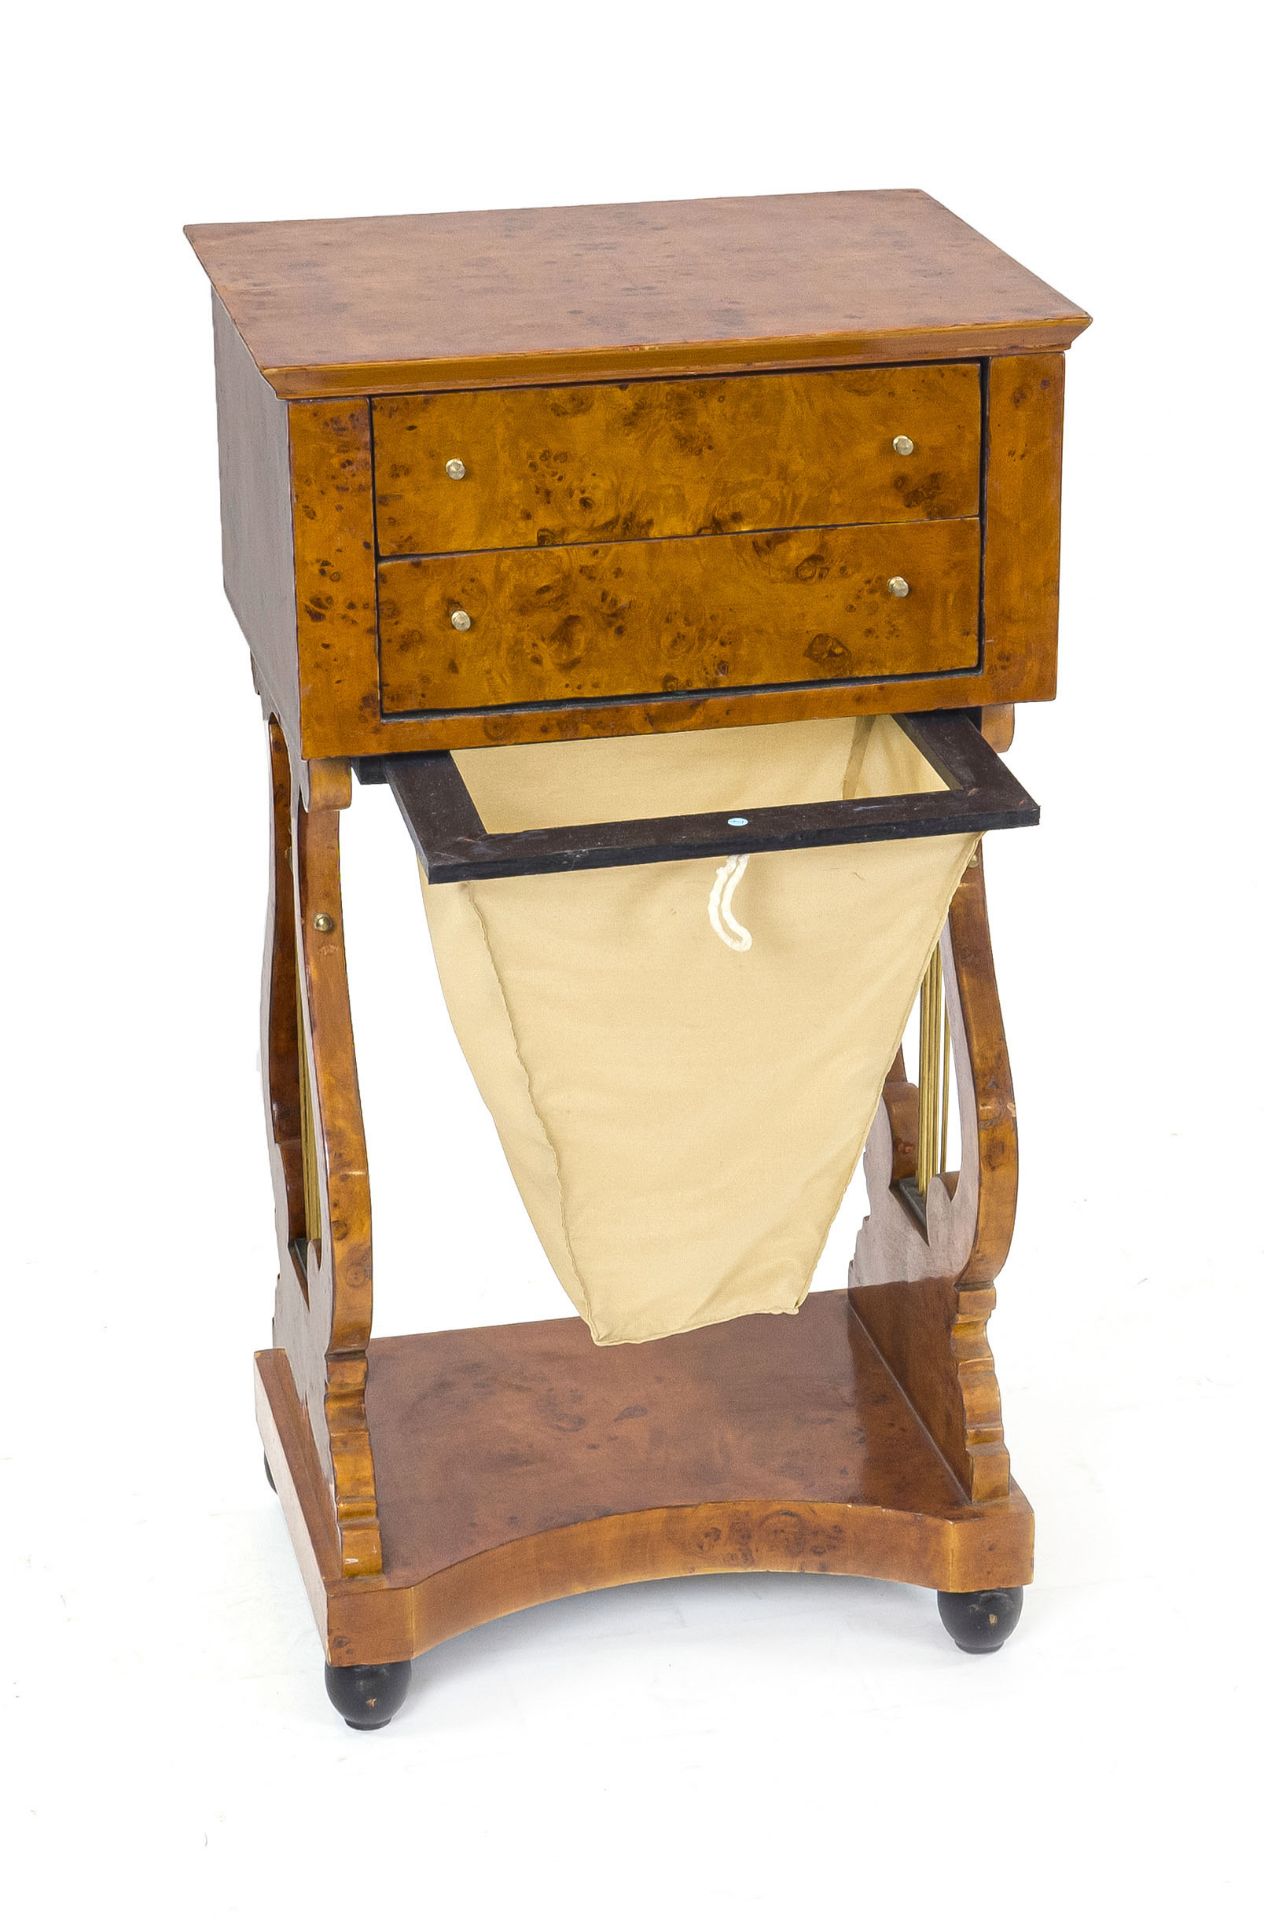 Biedermeier-style sewing table, 20th century, burlwood veneer, lyre-shaped sides, with wool - Image 2 of 3